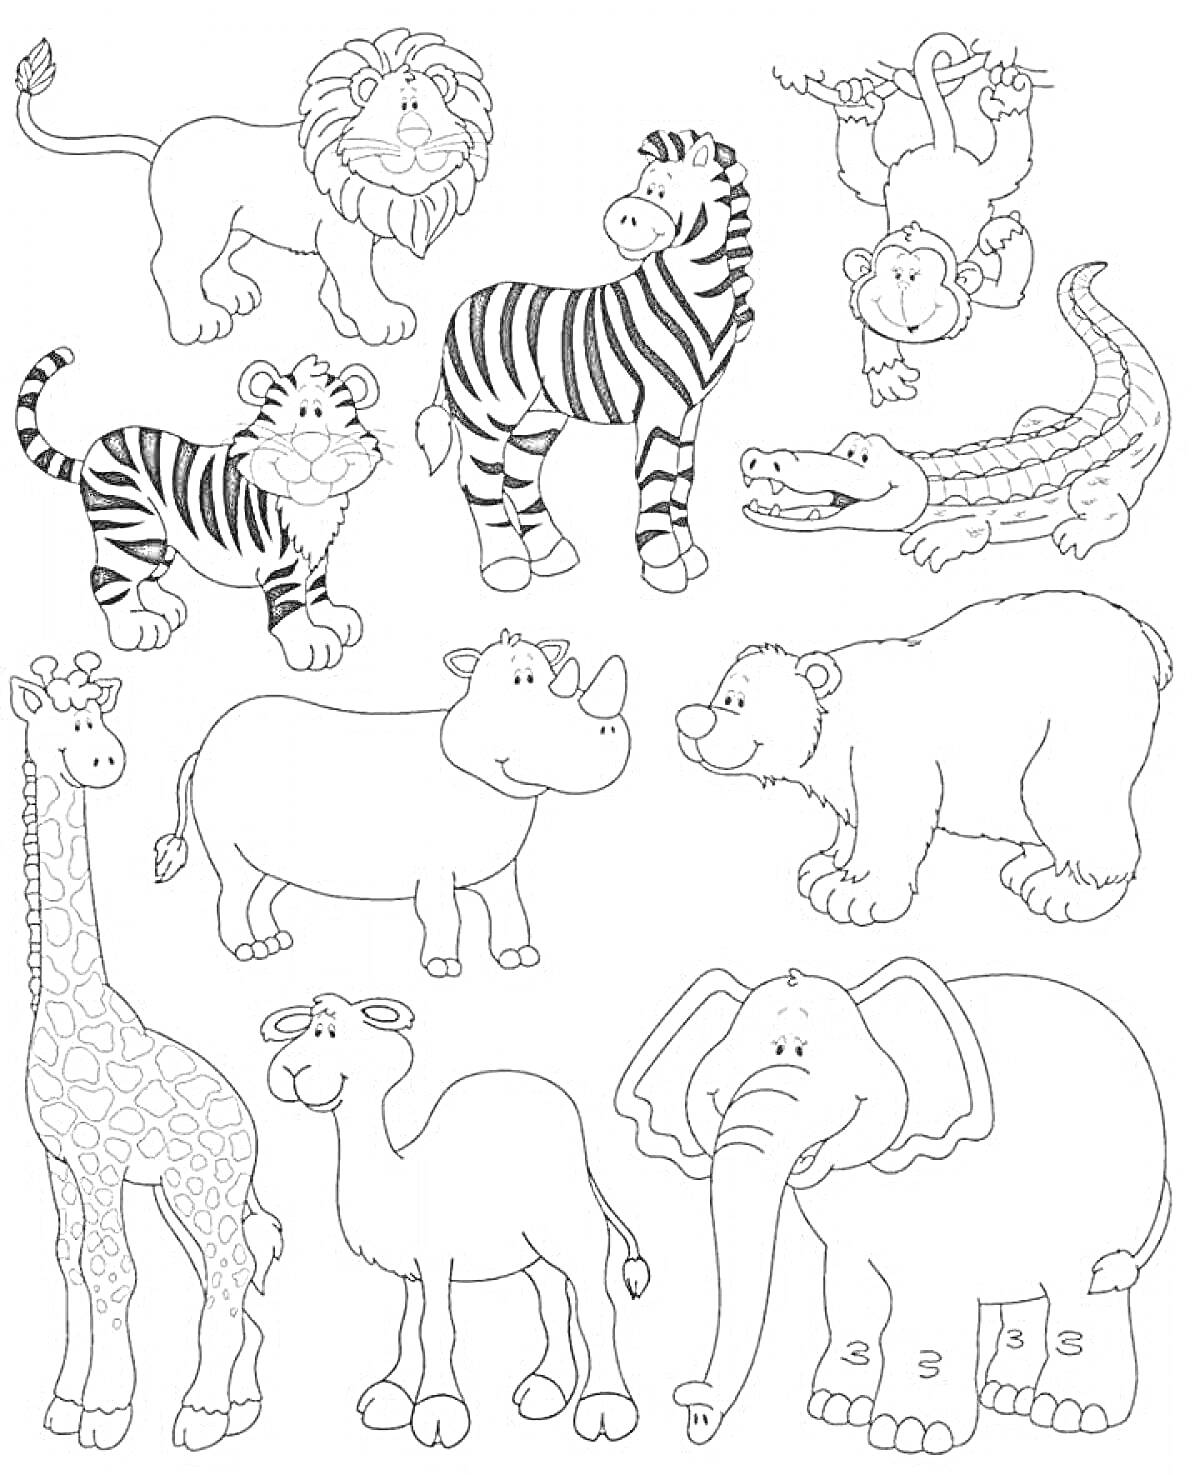 На раскраске изображено: Дошкольники, Животные, Жаркие страны, Лев, Тигр, Обезьяны, Крокодил, Носорог, Медведь, Верблюд, Слон